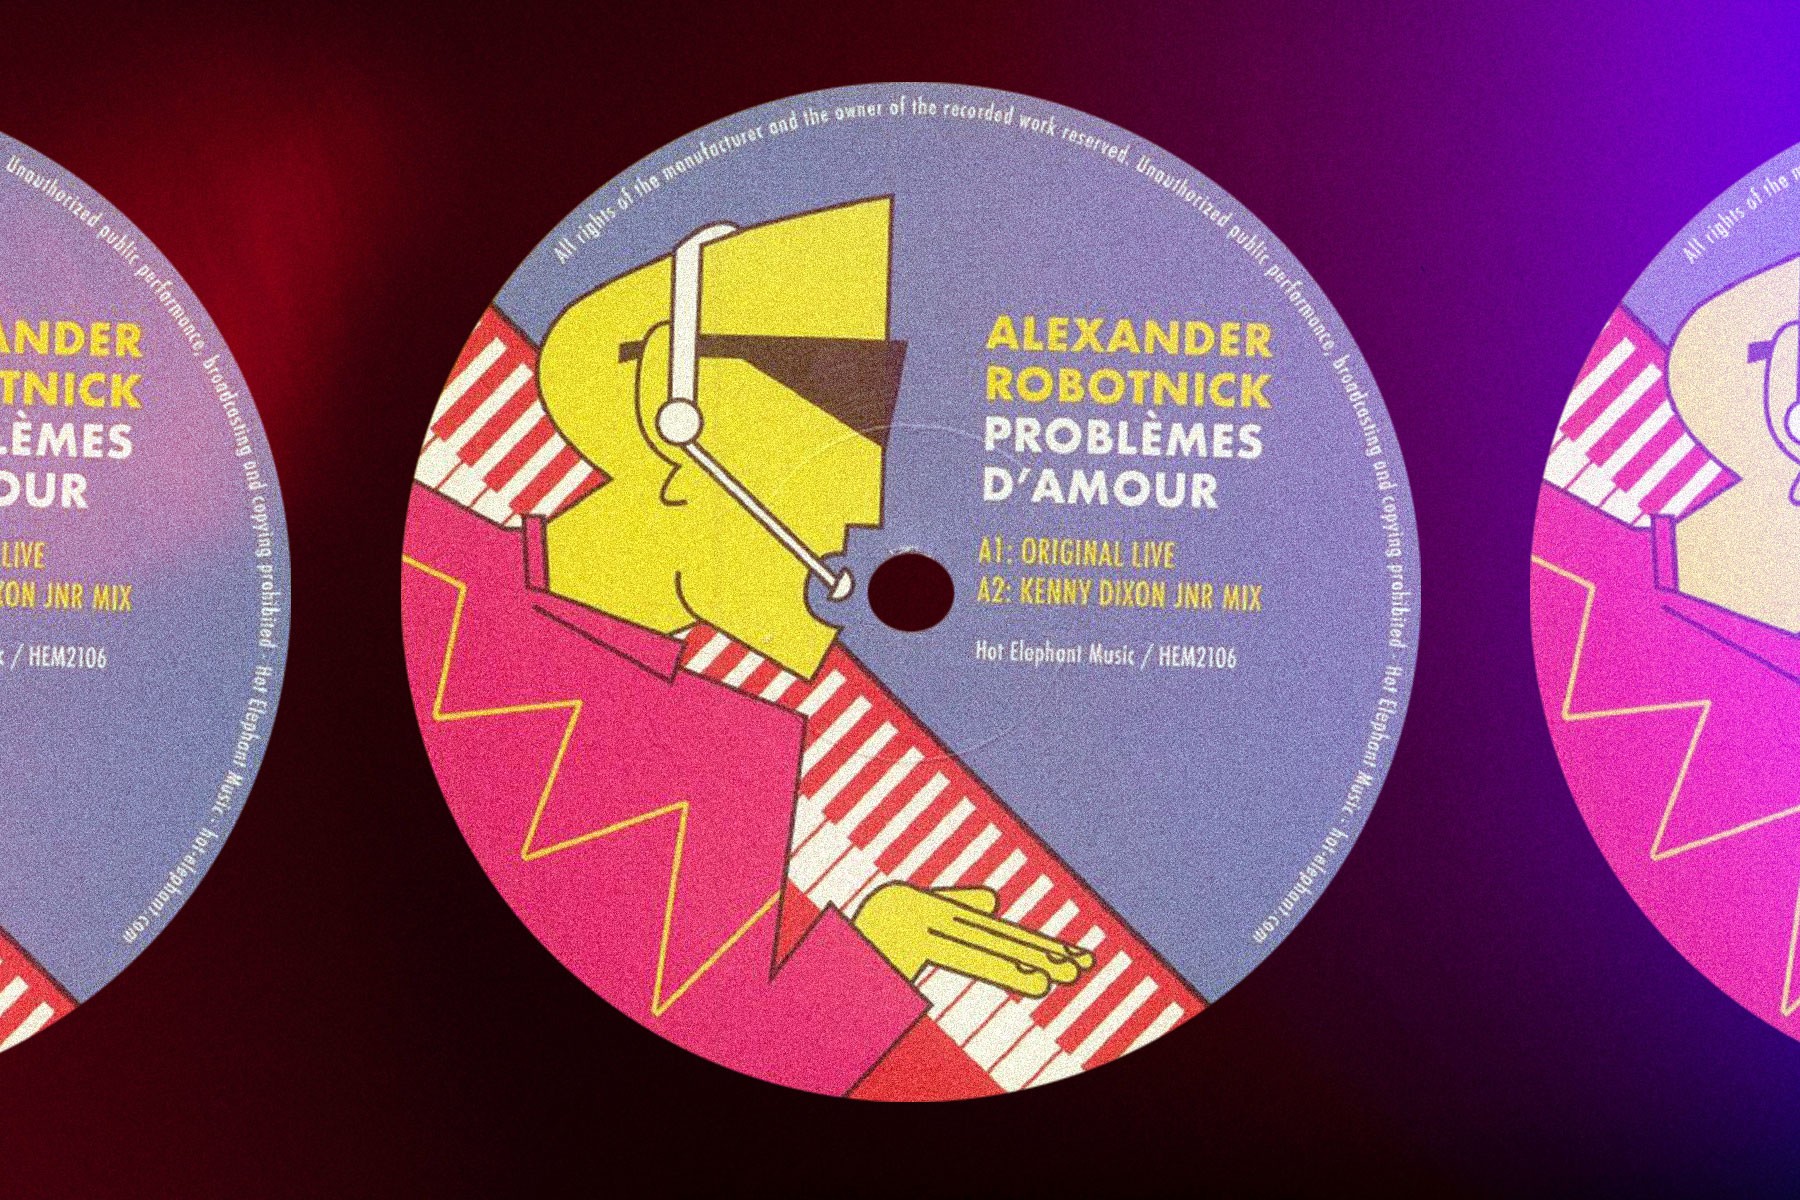 Alexander Robotnick Problemes d'amour Moodymann remix